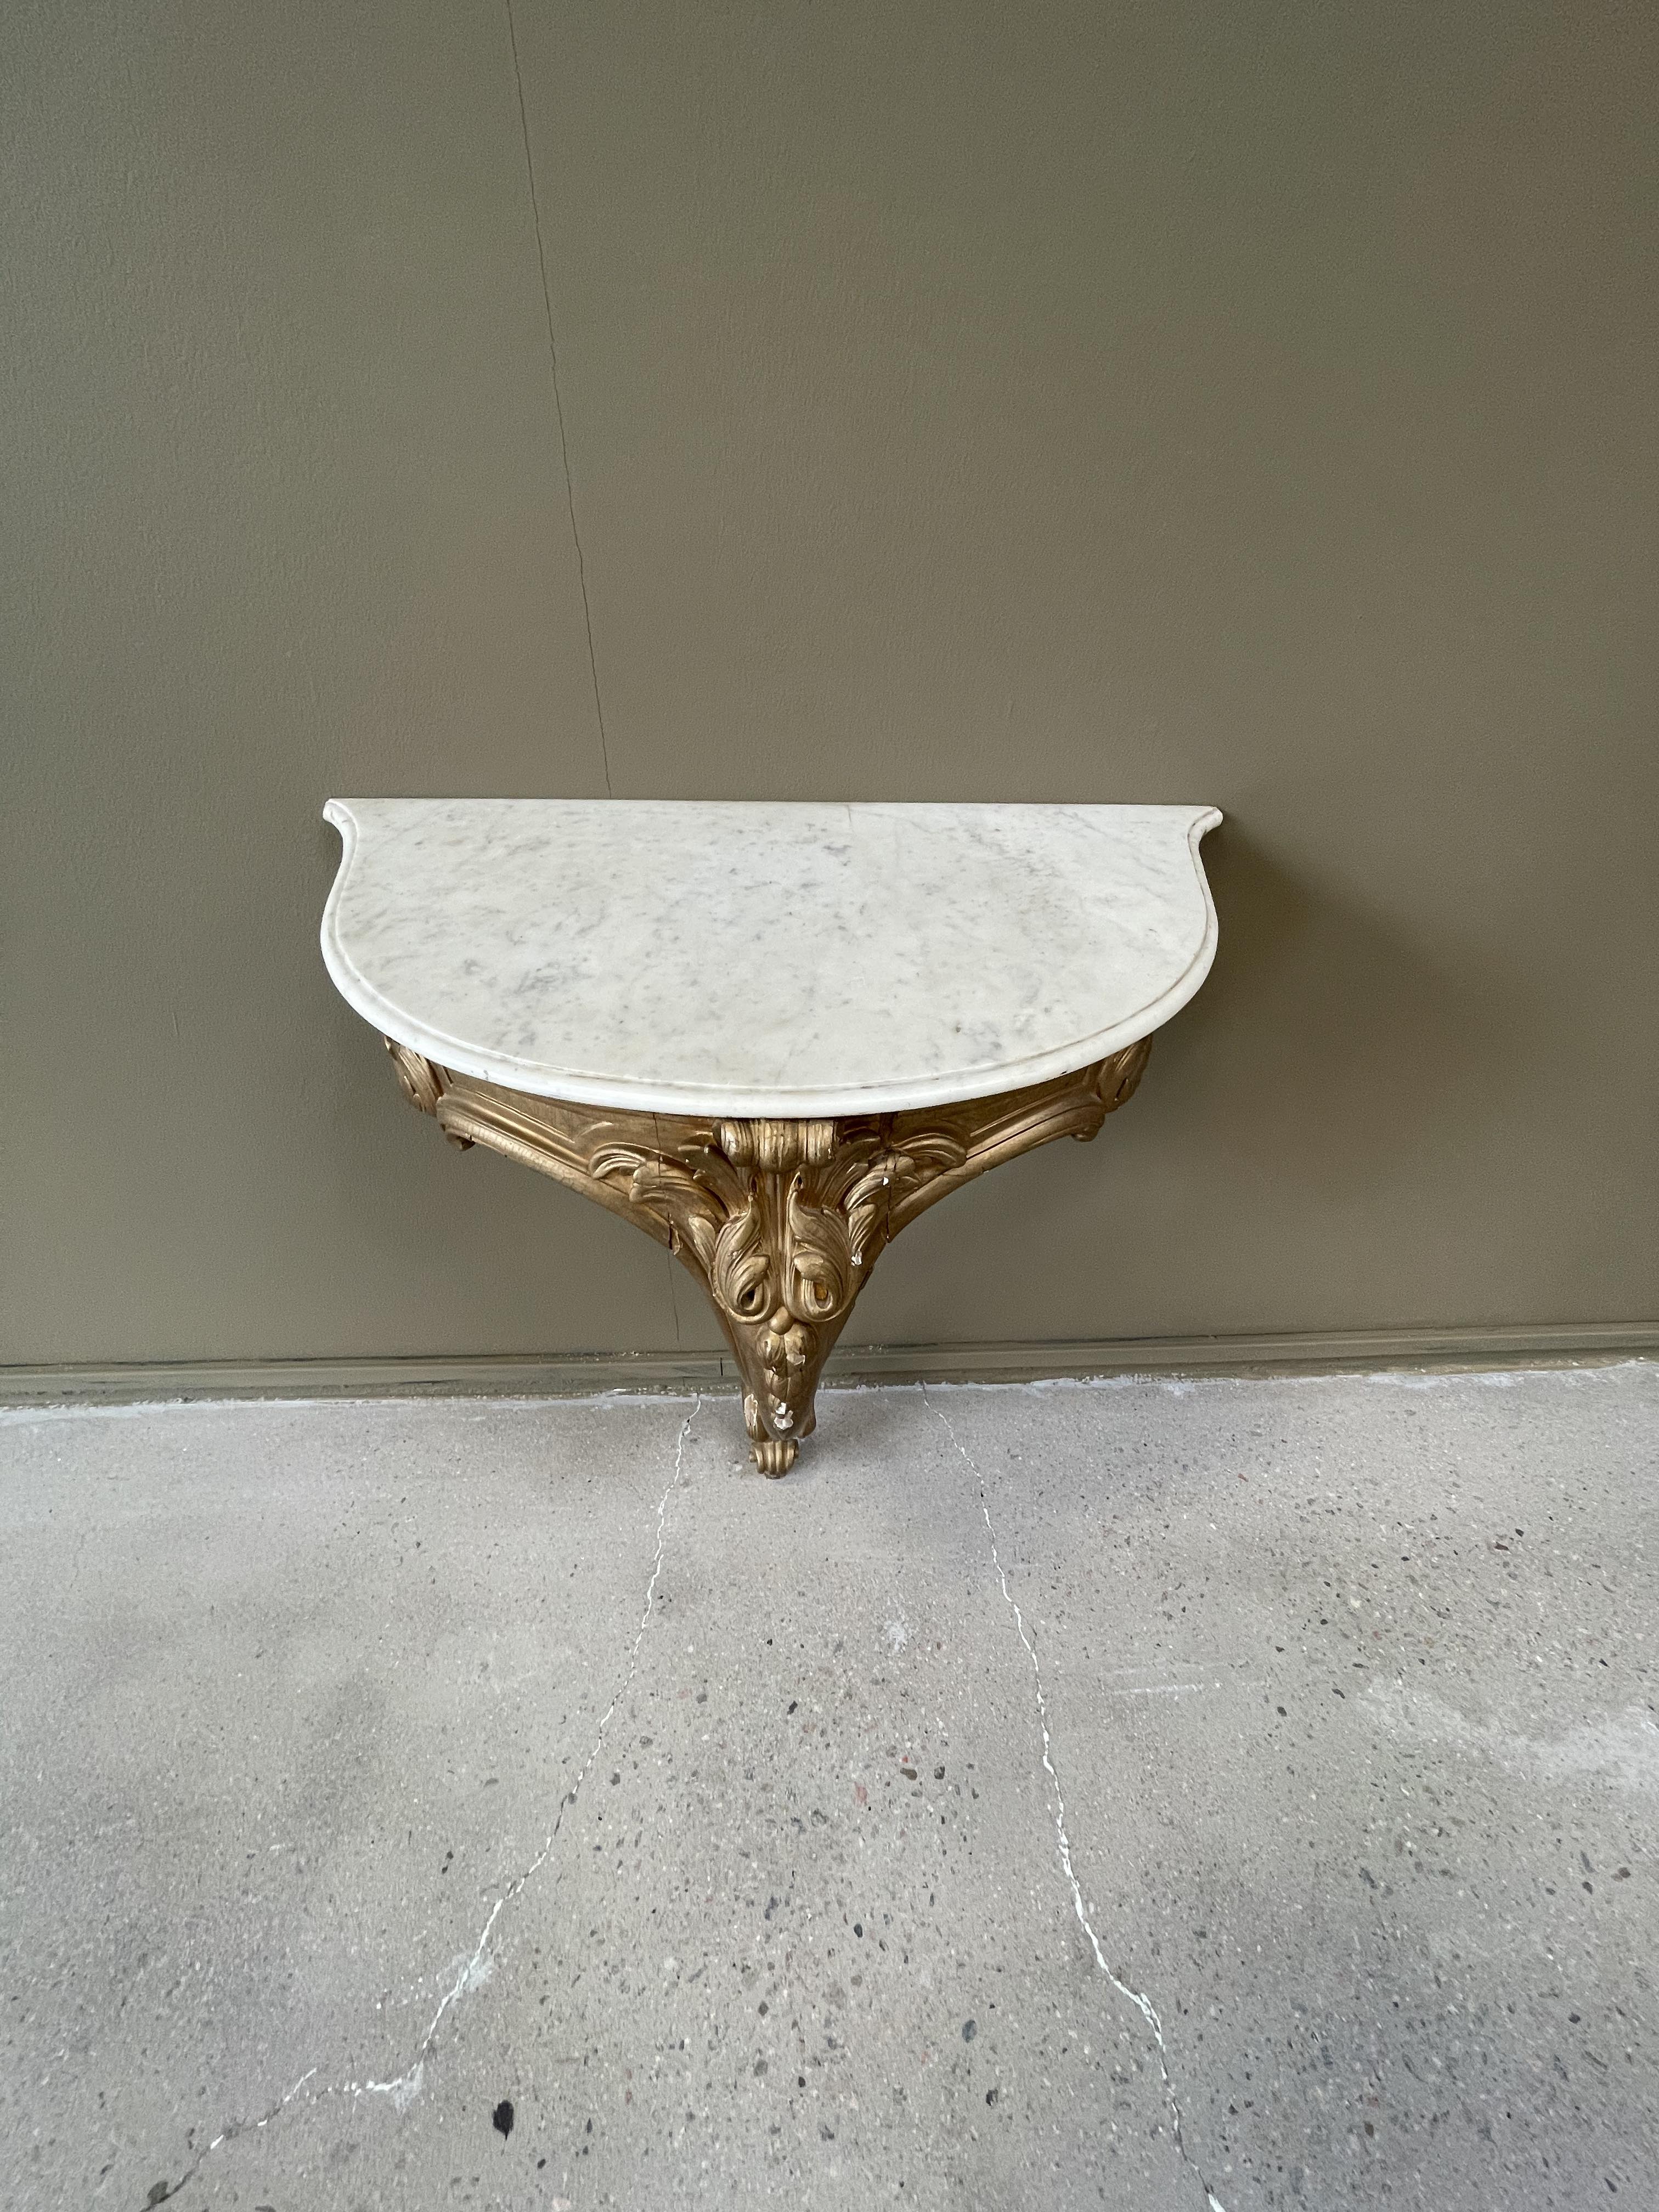 Väggfast bord med vit marmorskiva